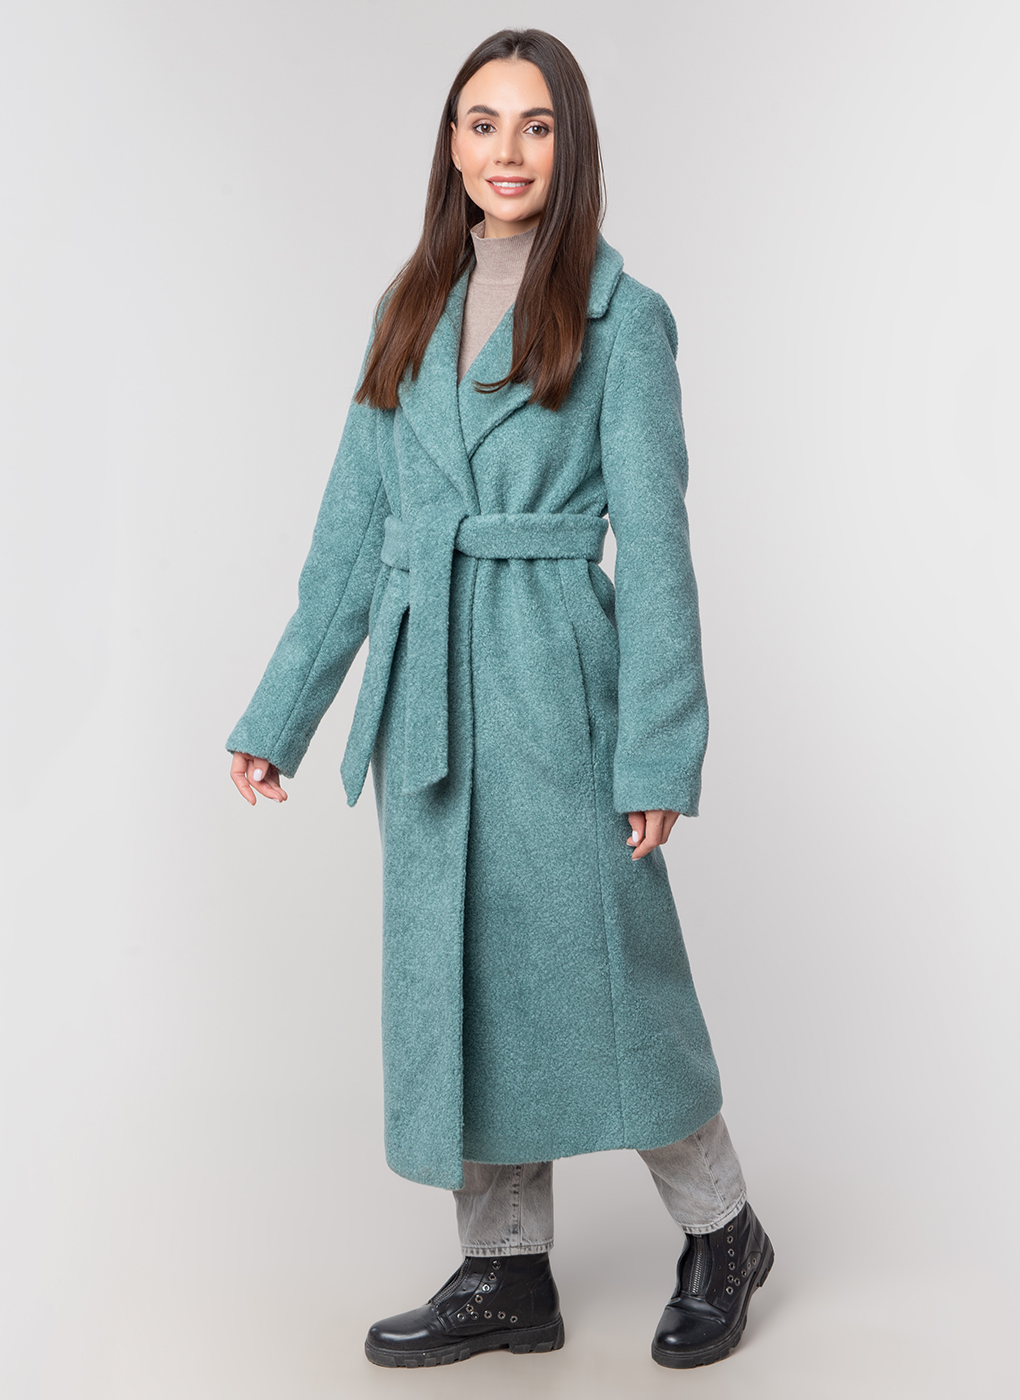 Пальто женское Каляев 59121 зеленое 48 RU